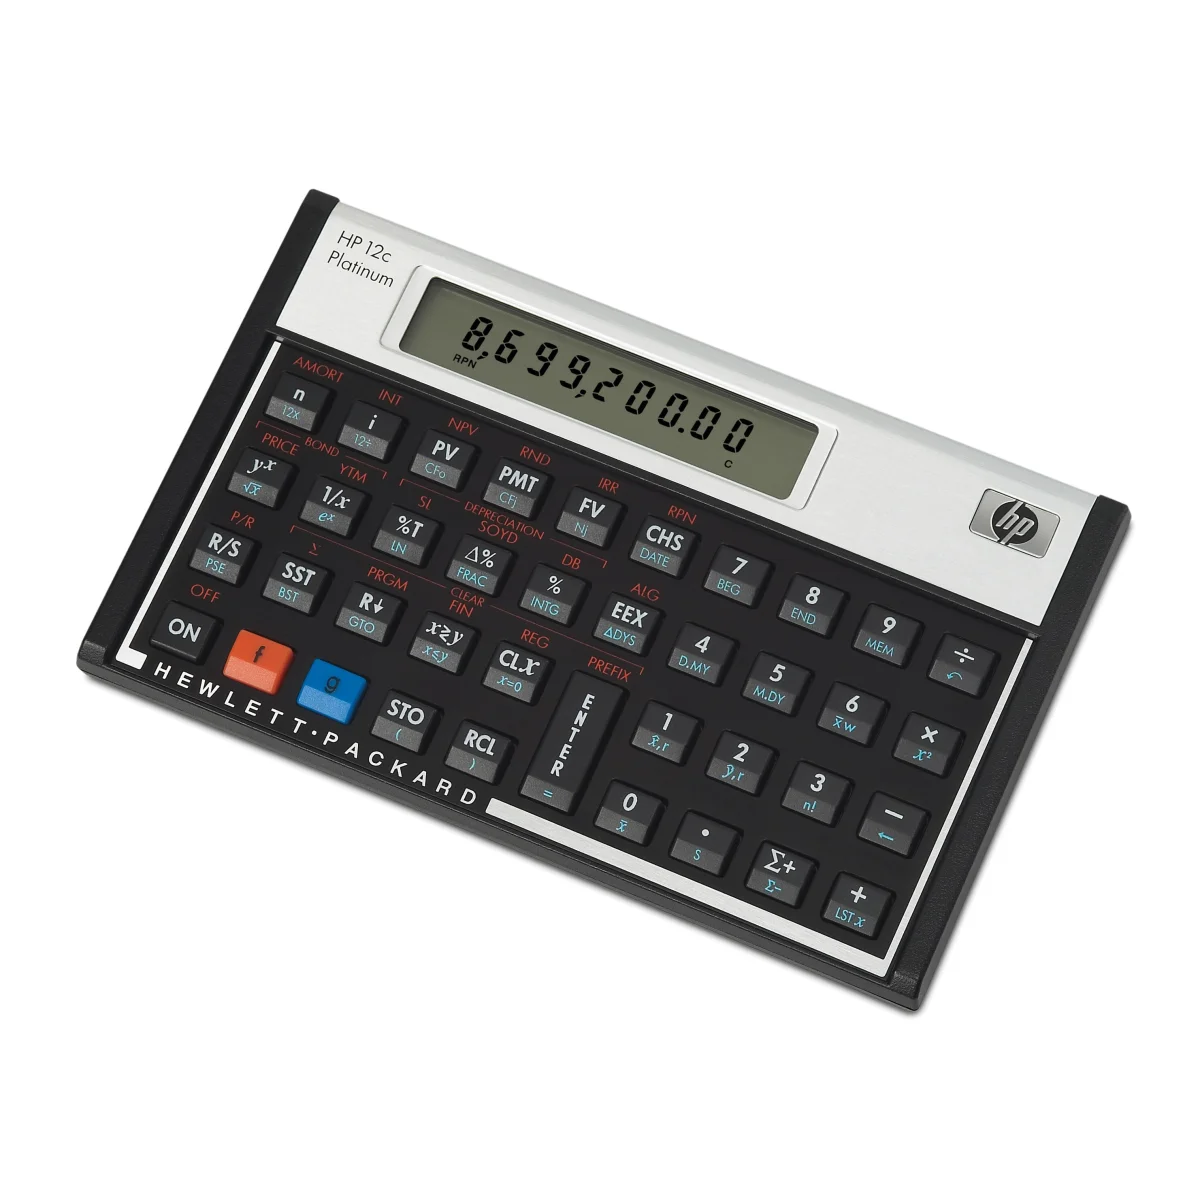 SCOPRI LE OFFERTE ONLINE SU HP 12c calcolatrice Desktop Calcolatrice  finanziaria Alluminio, Nero [F2231AA#UUZ]